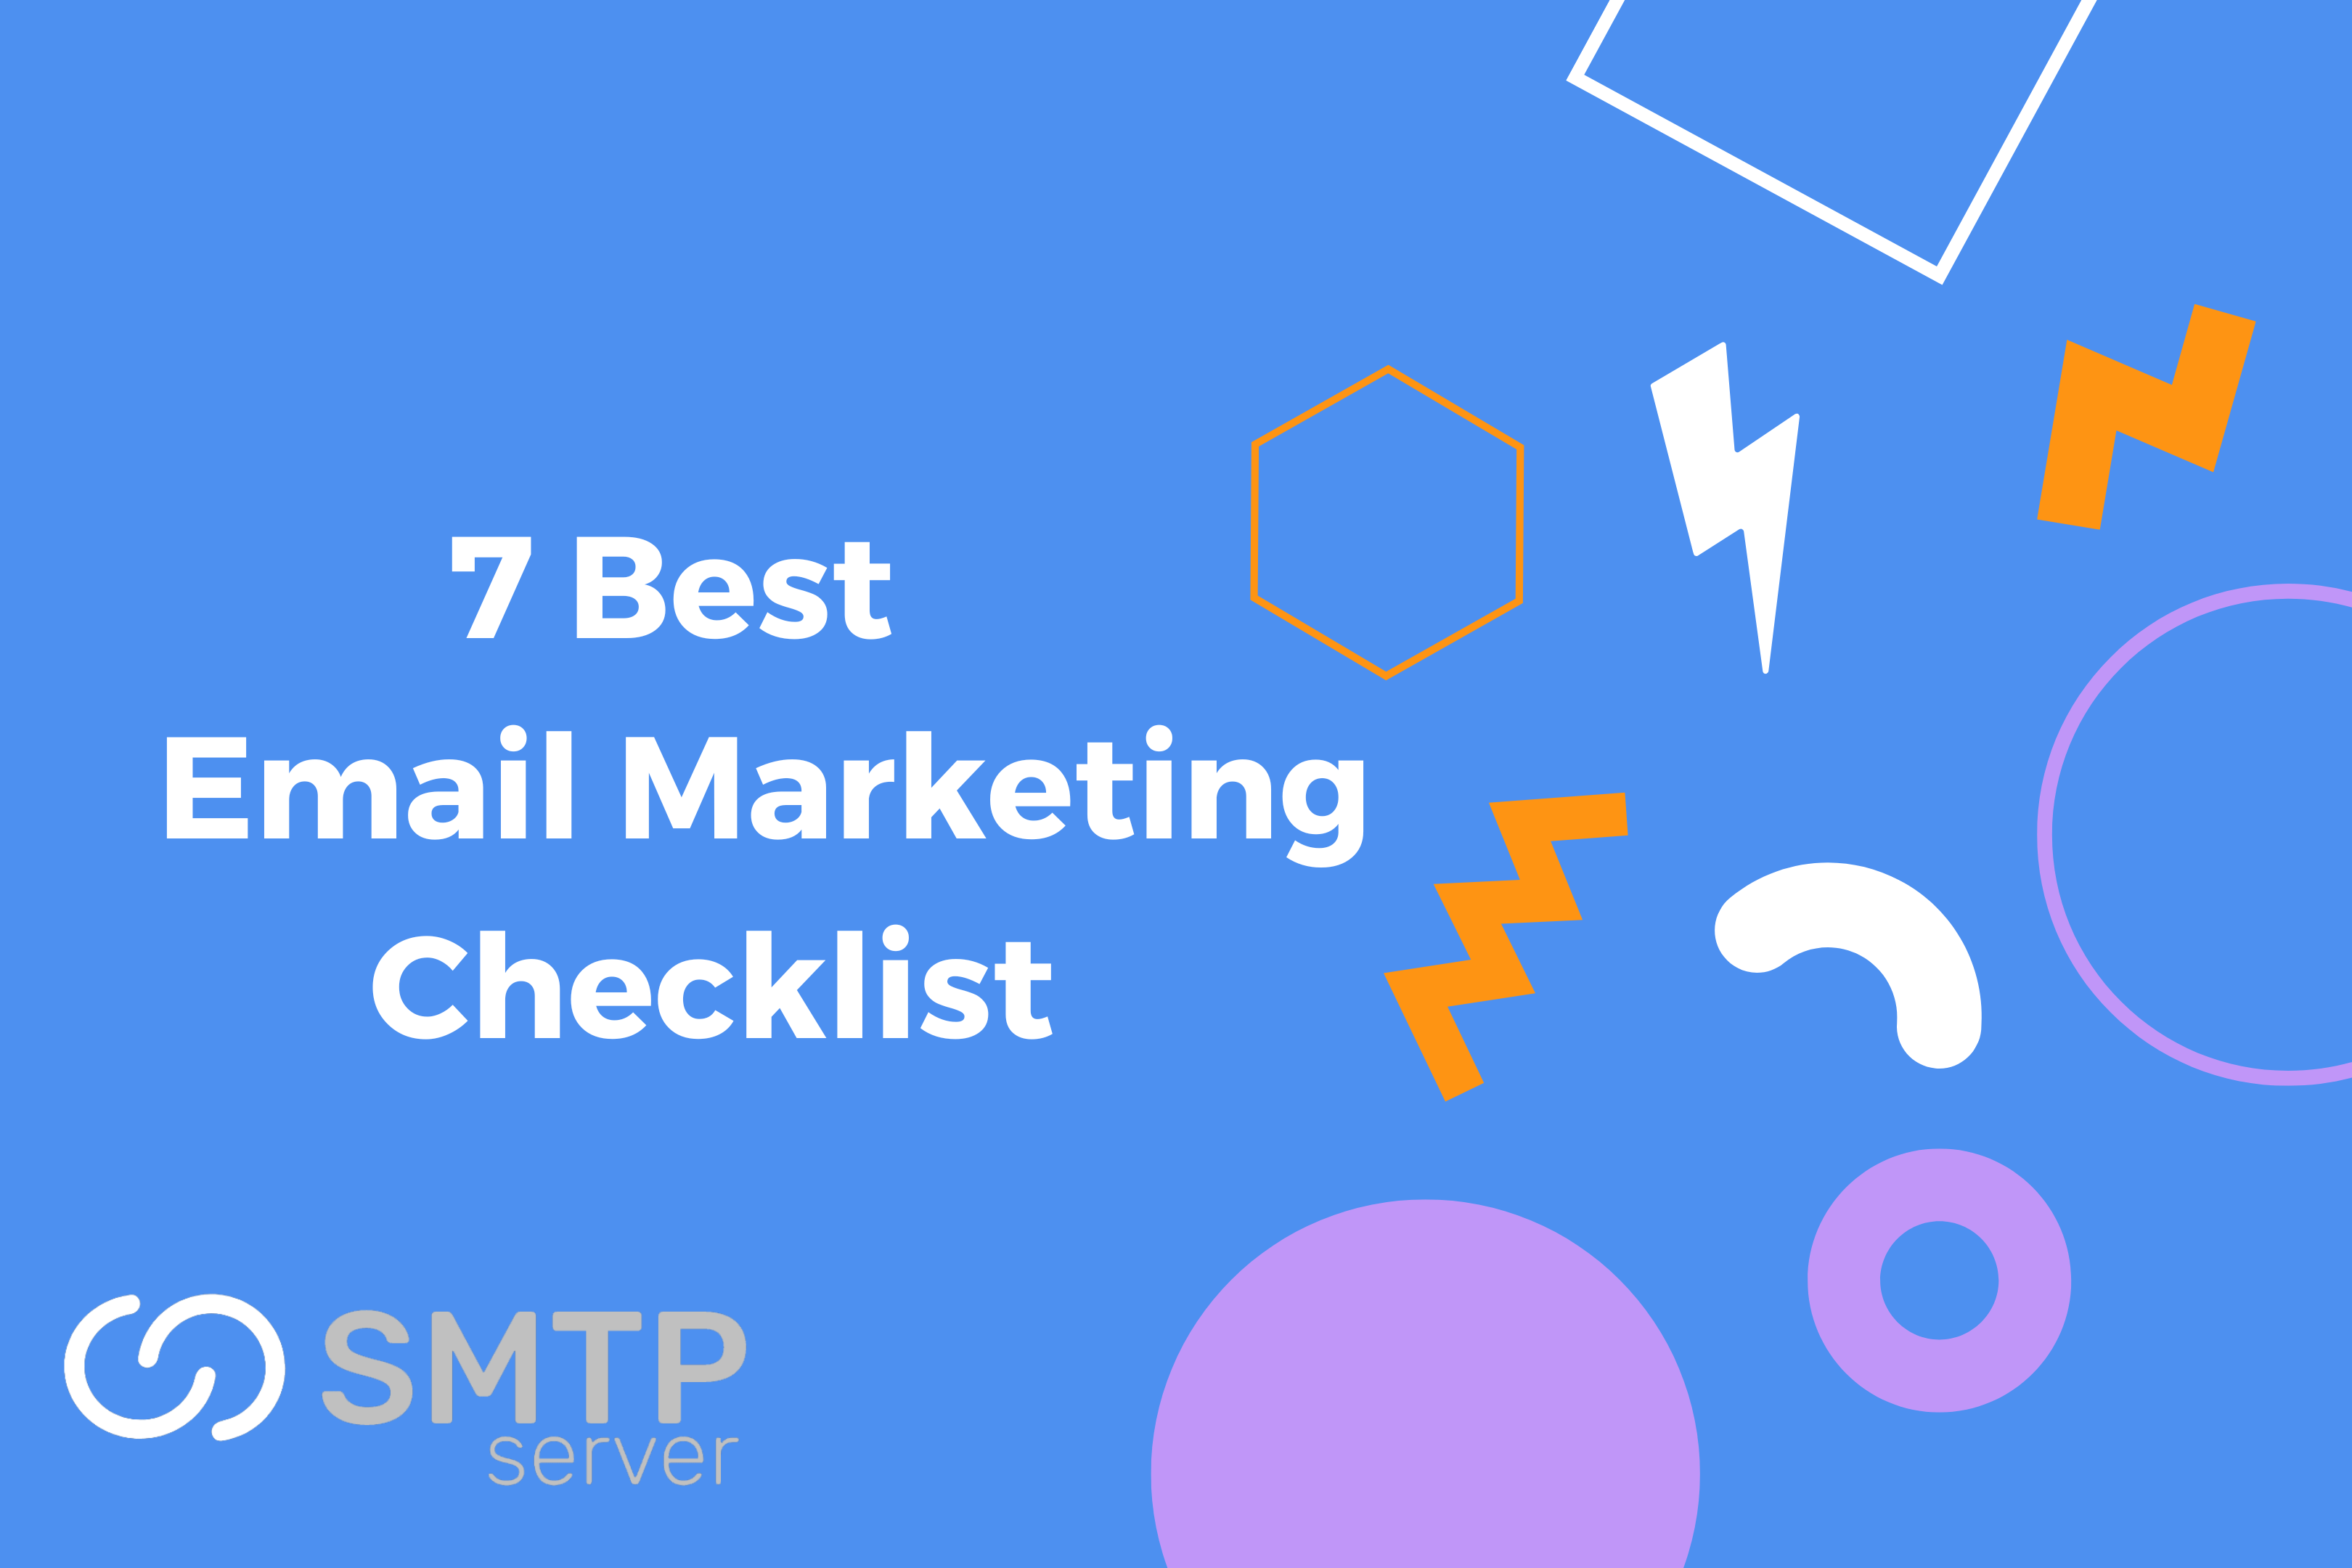 7 Best Email Marketing Checklist